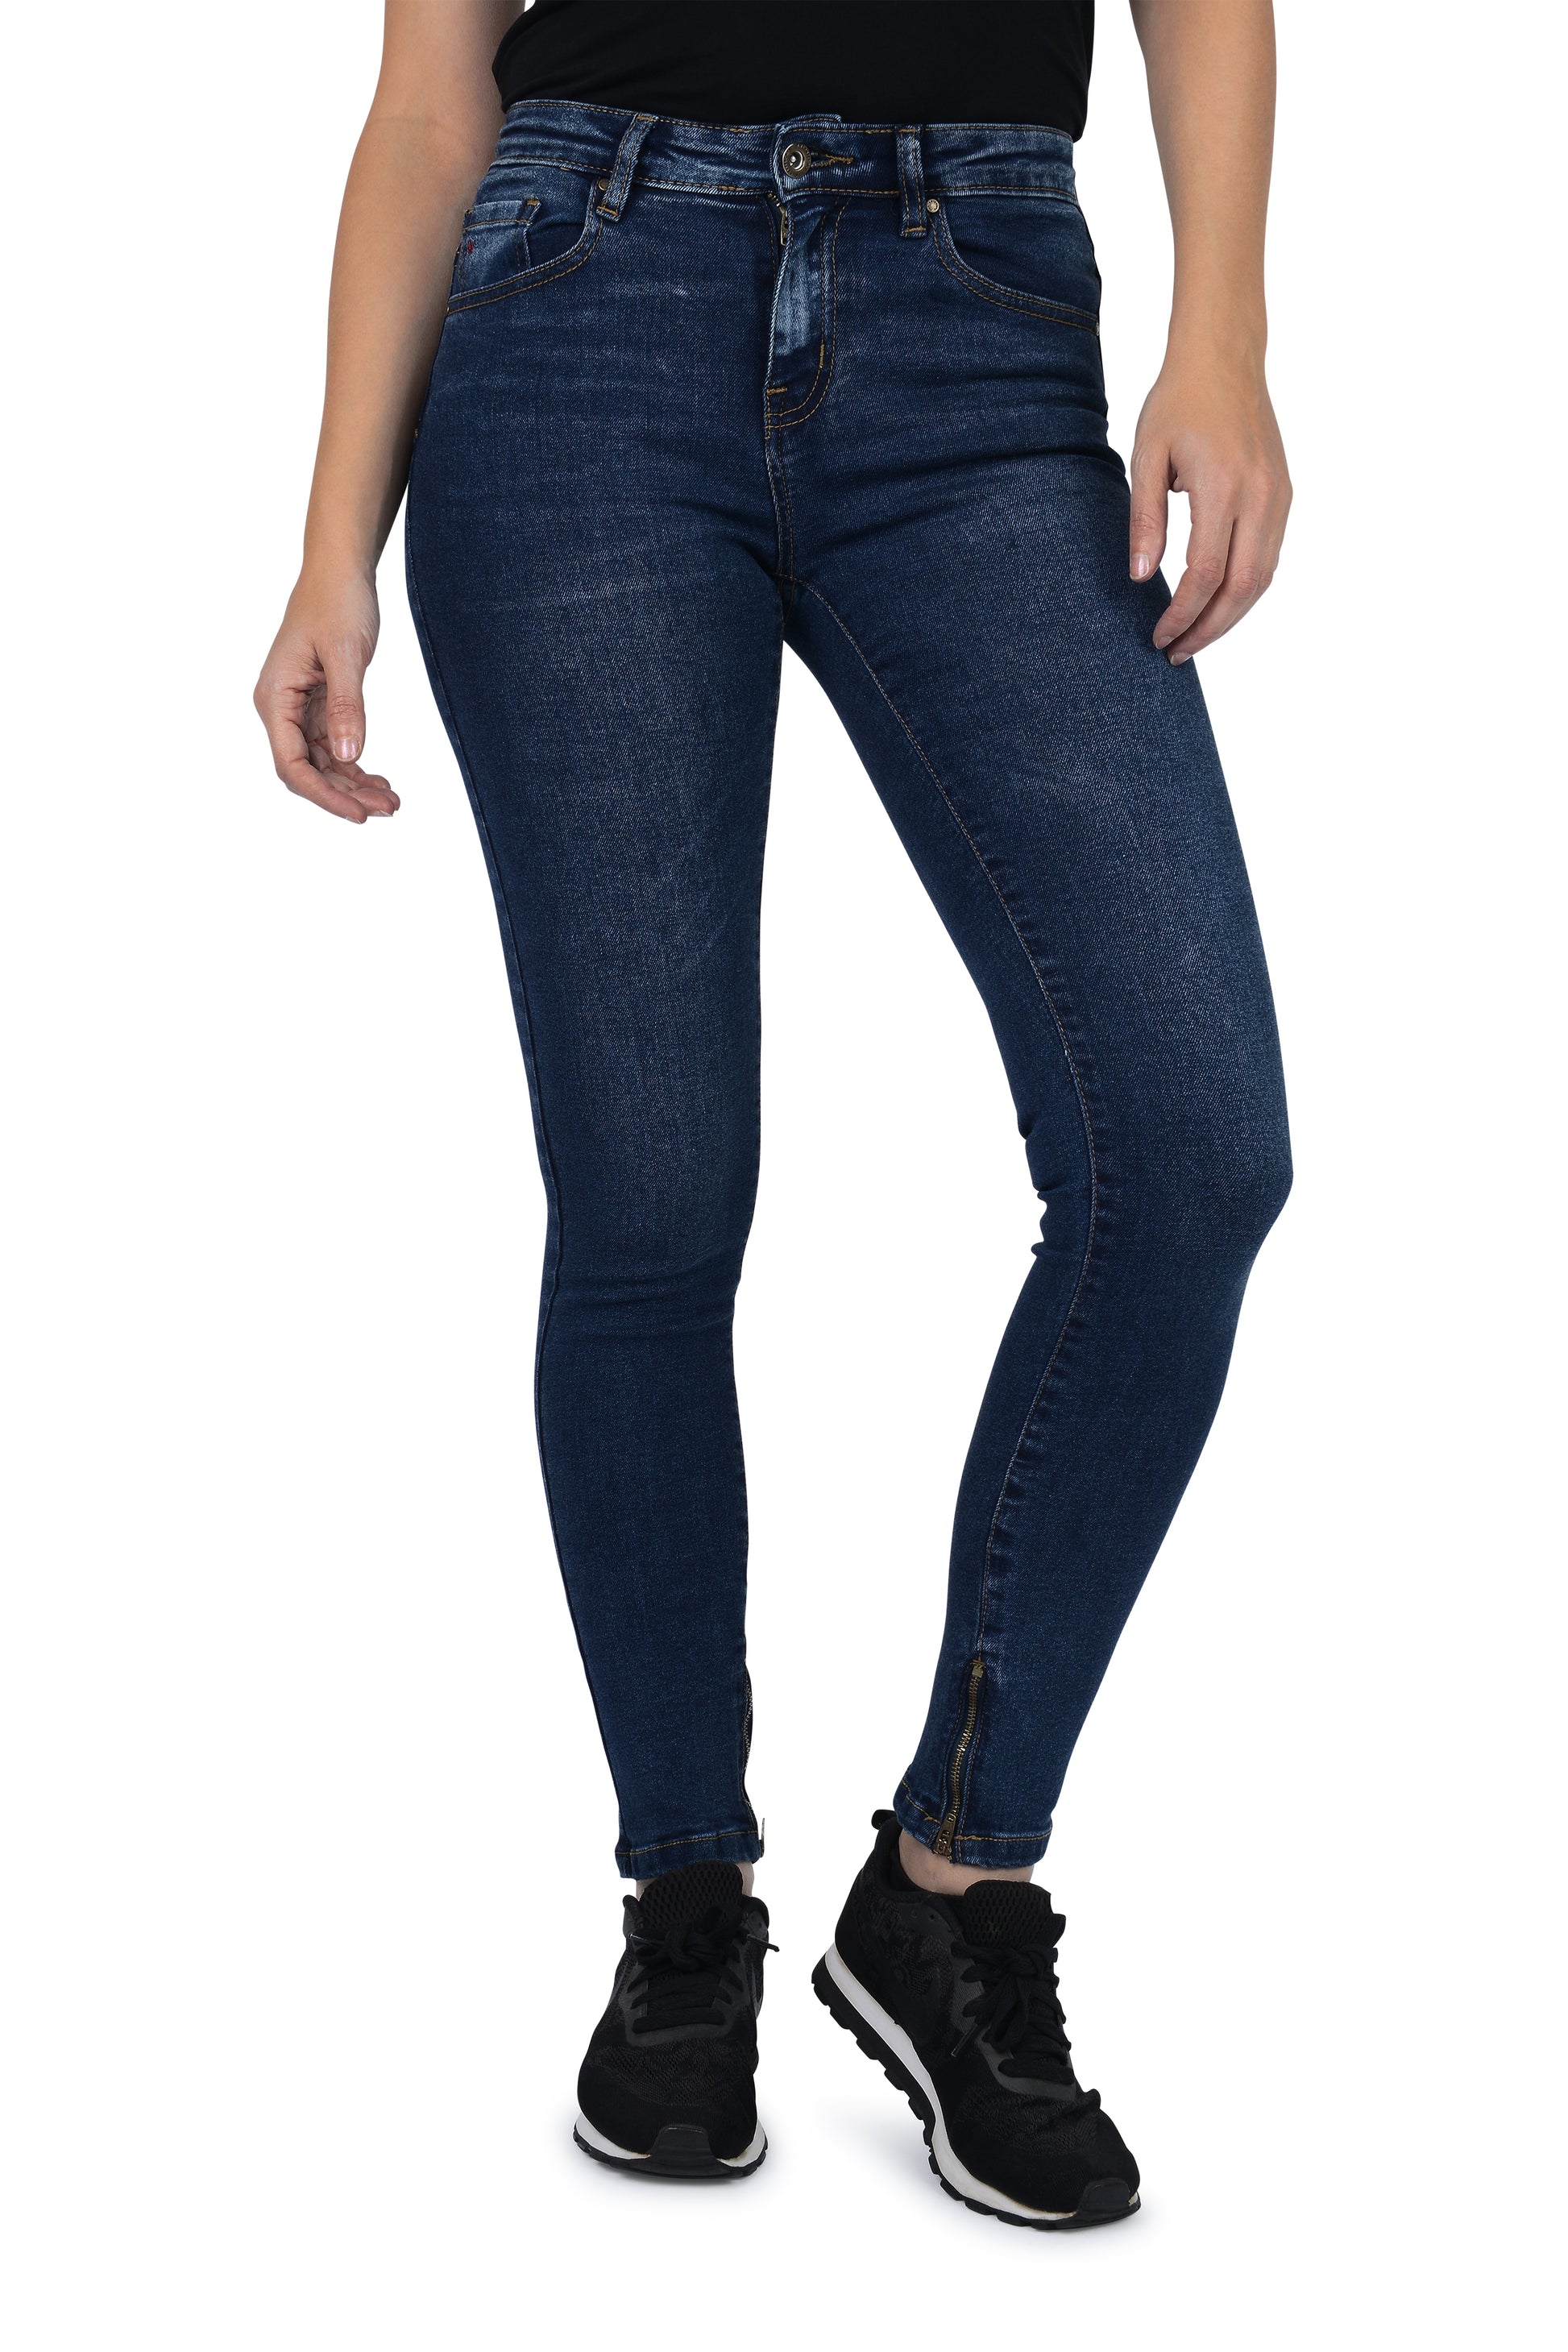 Women Mid-Rise Jeans Slim & Shape Skinny Ankle Zipper - Deep